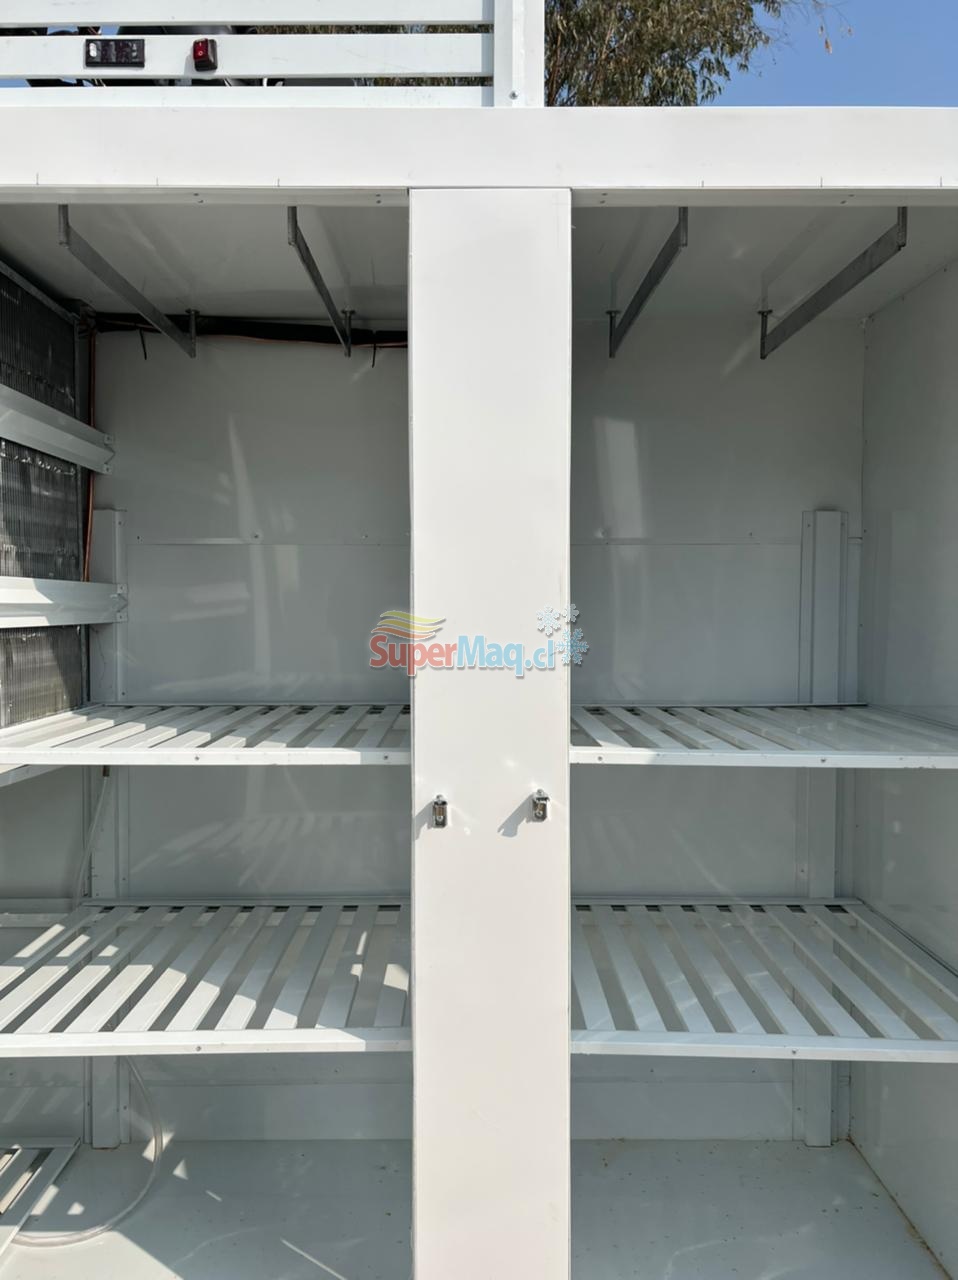 Refrigerador Carnicero 2 puertas 1.60 Mt : Refrigeracion